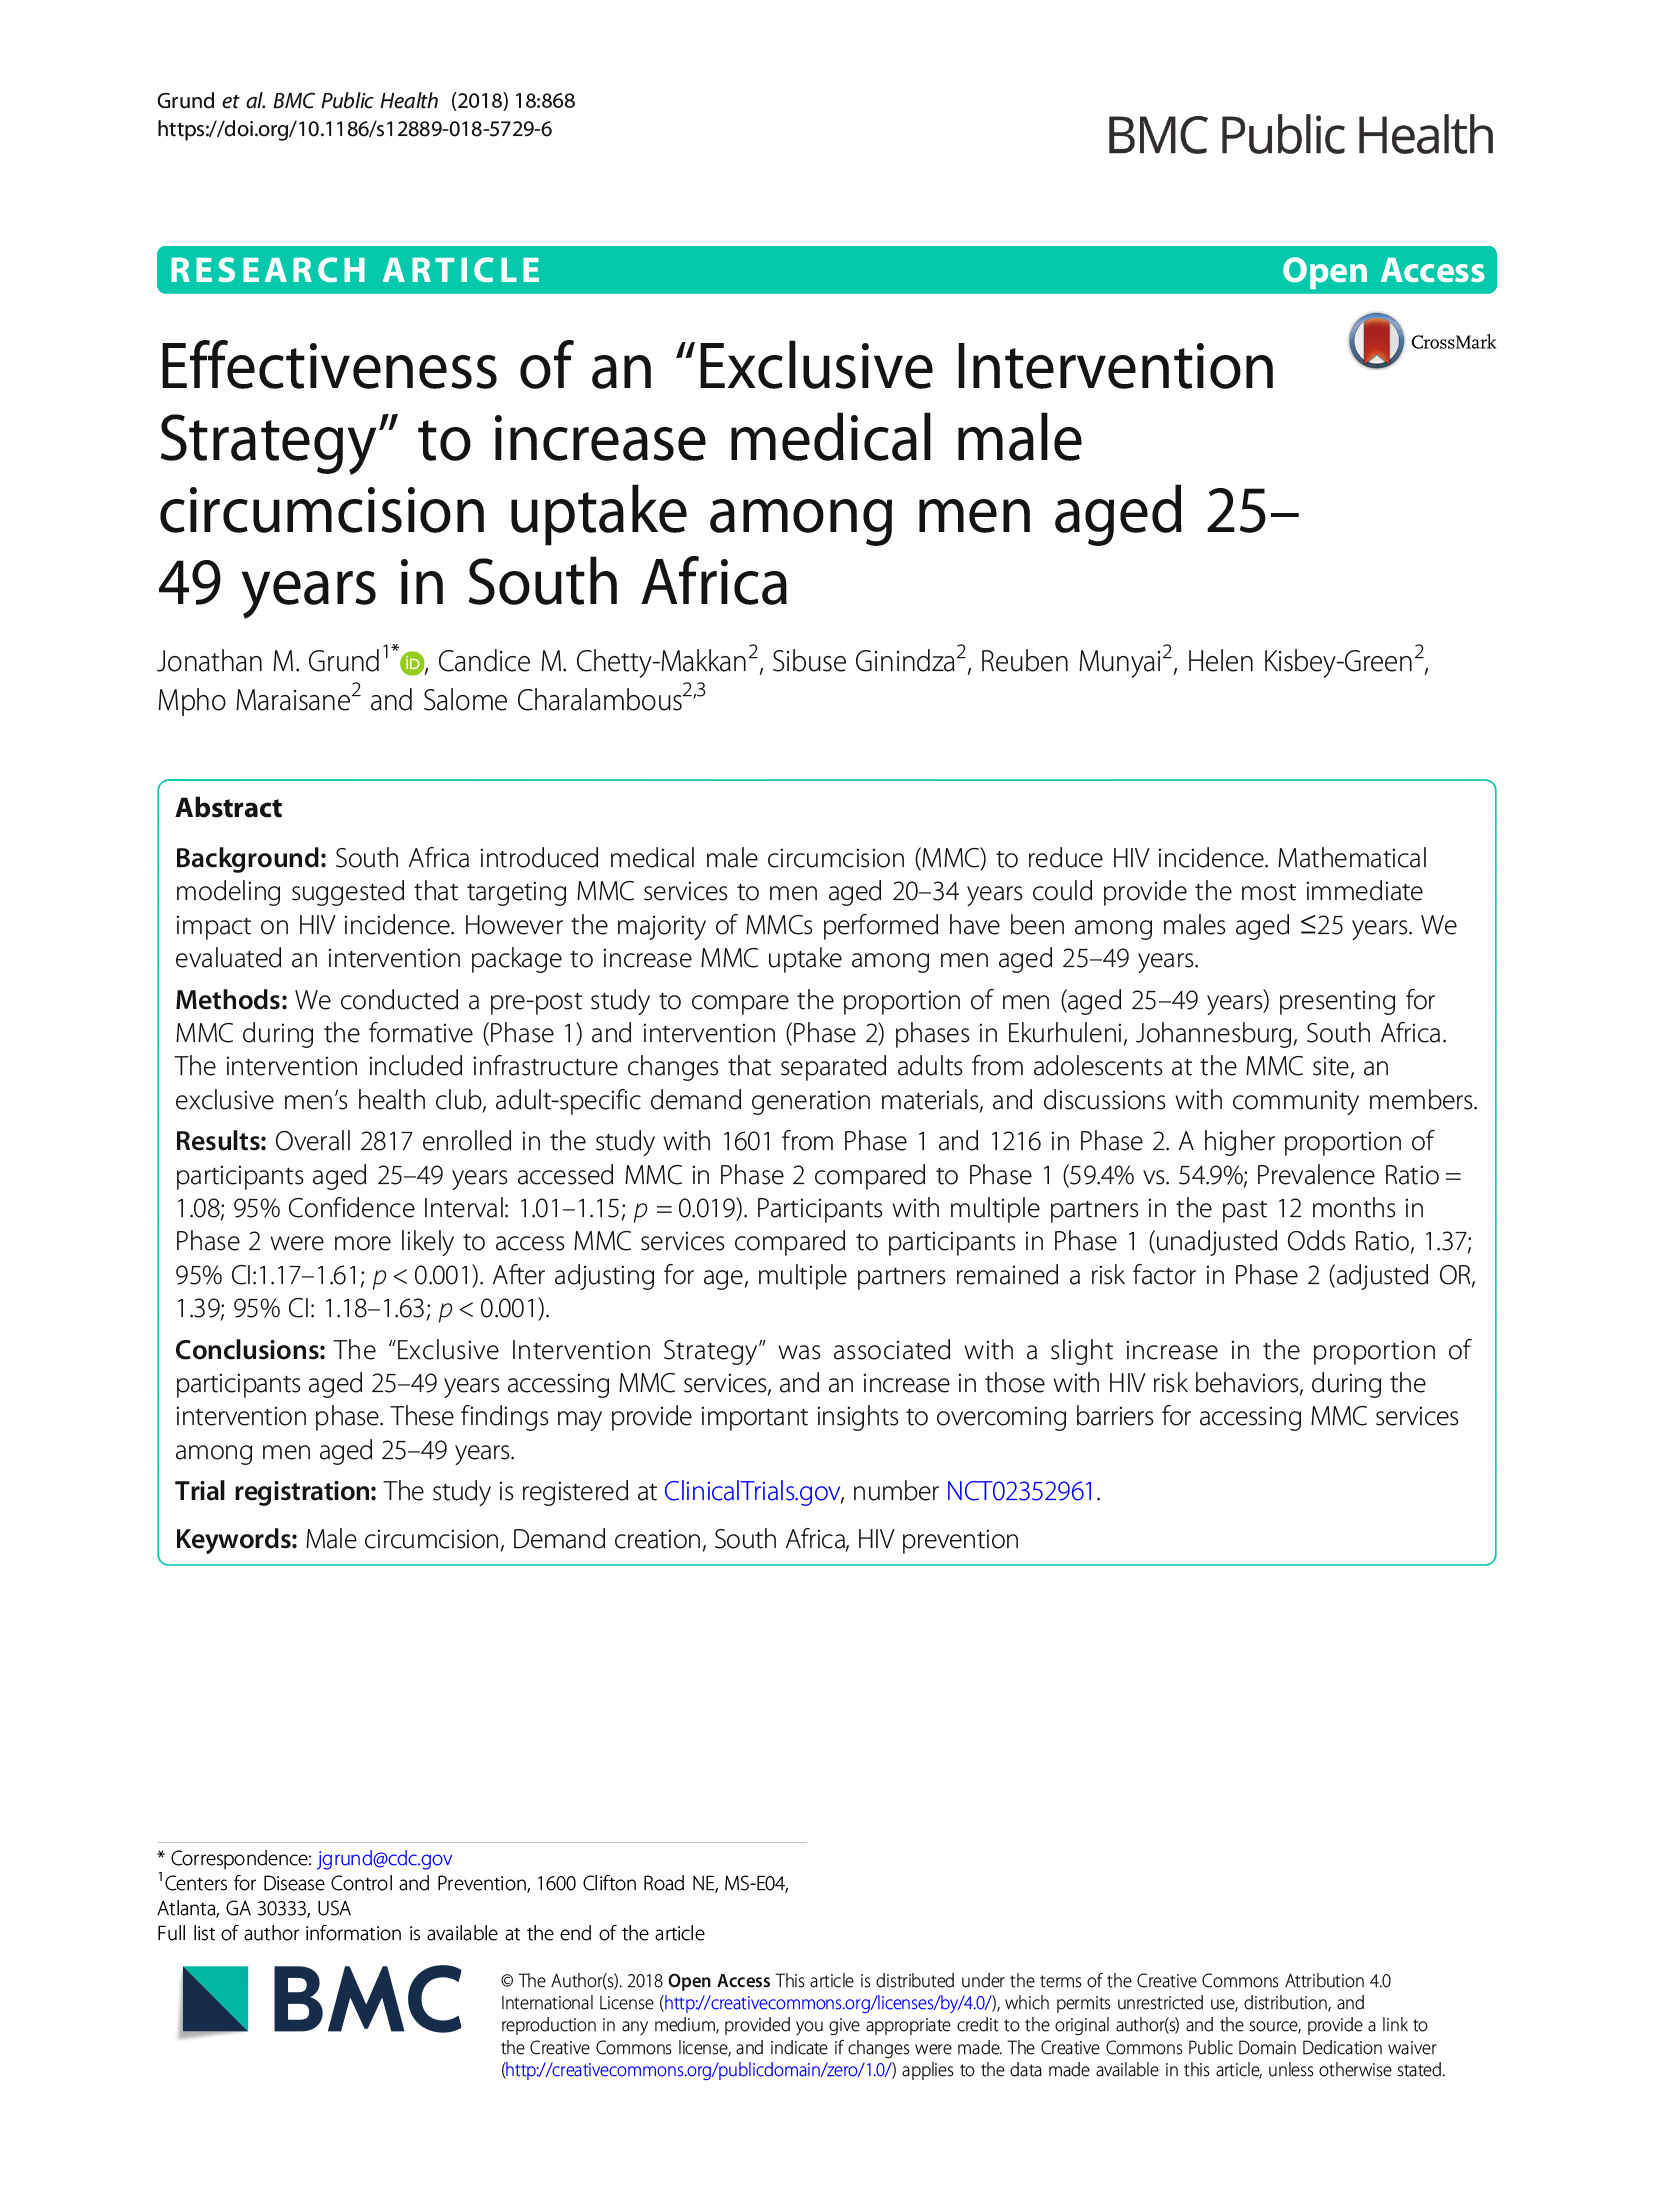 Eficacia de una "estrategia de intervención exclusiva" para aumentar la aceptación de la circuncisión masculina médica entre los hombres de 25 a 49 años en Sudáfrica - portada